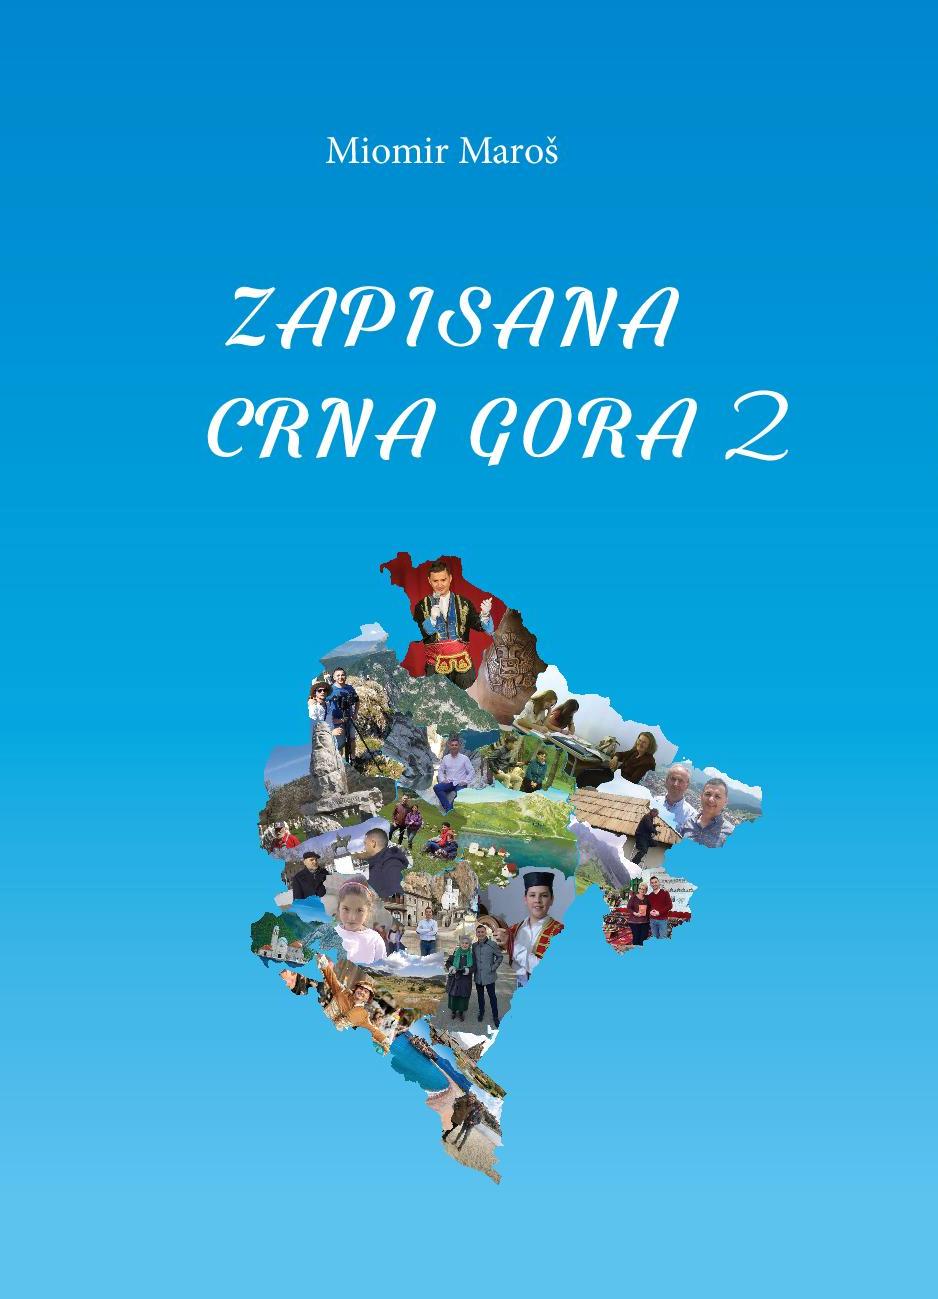 Večeras u KIC-u promocija 20 godina emisije "Zapis" i knjiga 1 i 2 “Zapisana Crna Gora" dr Miomira Maroša